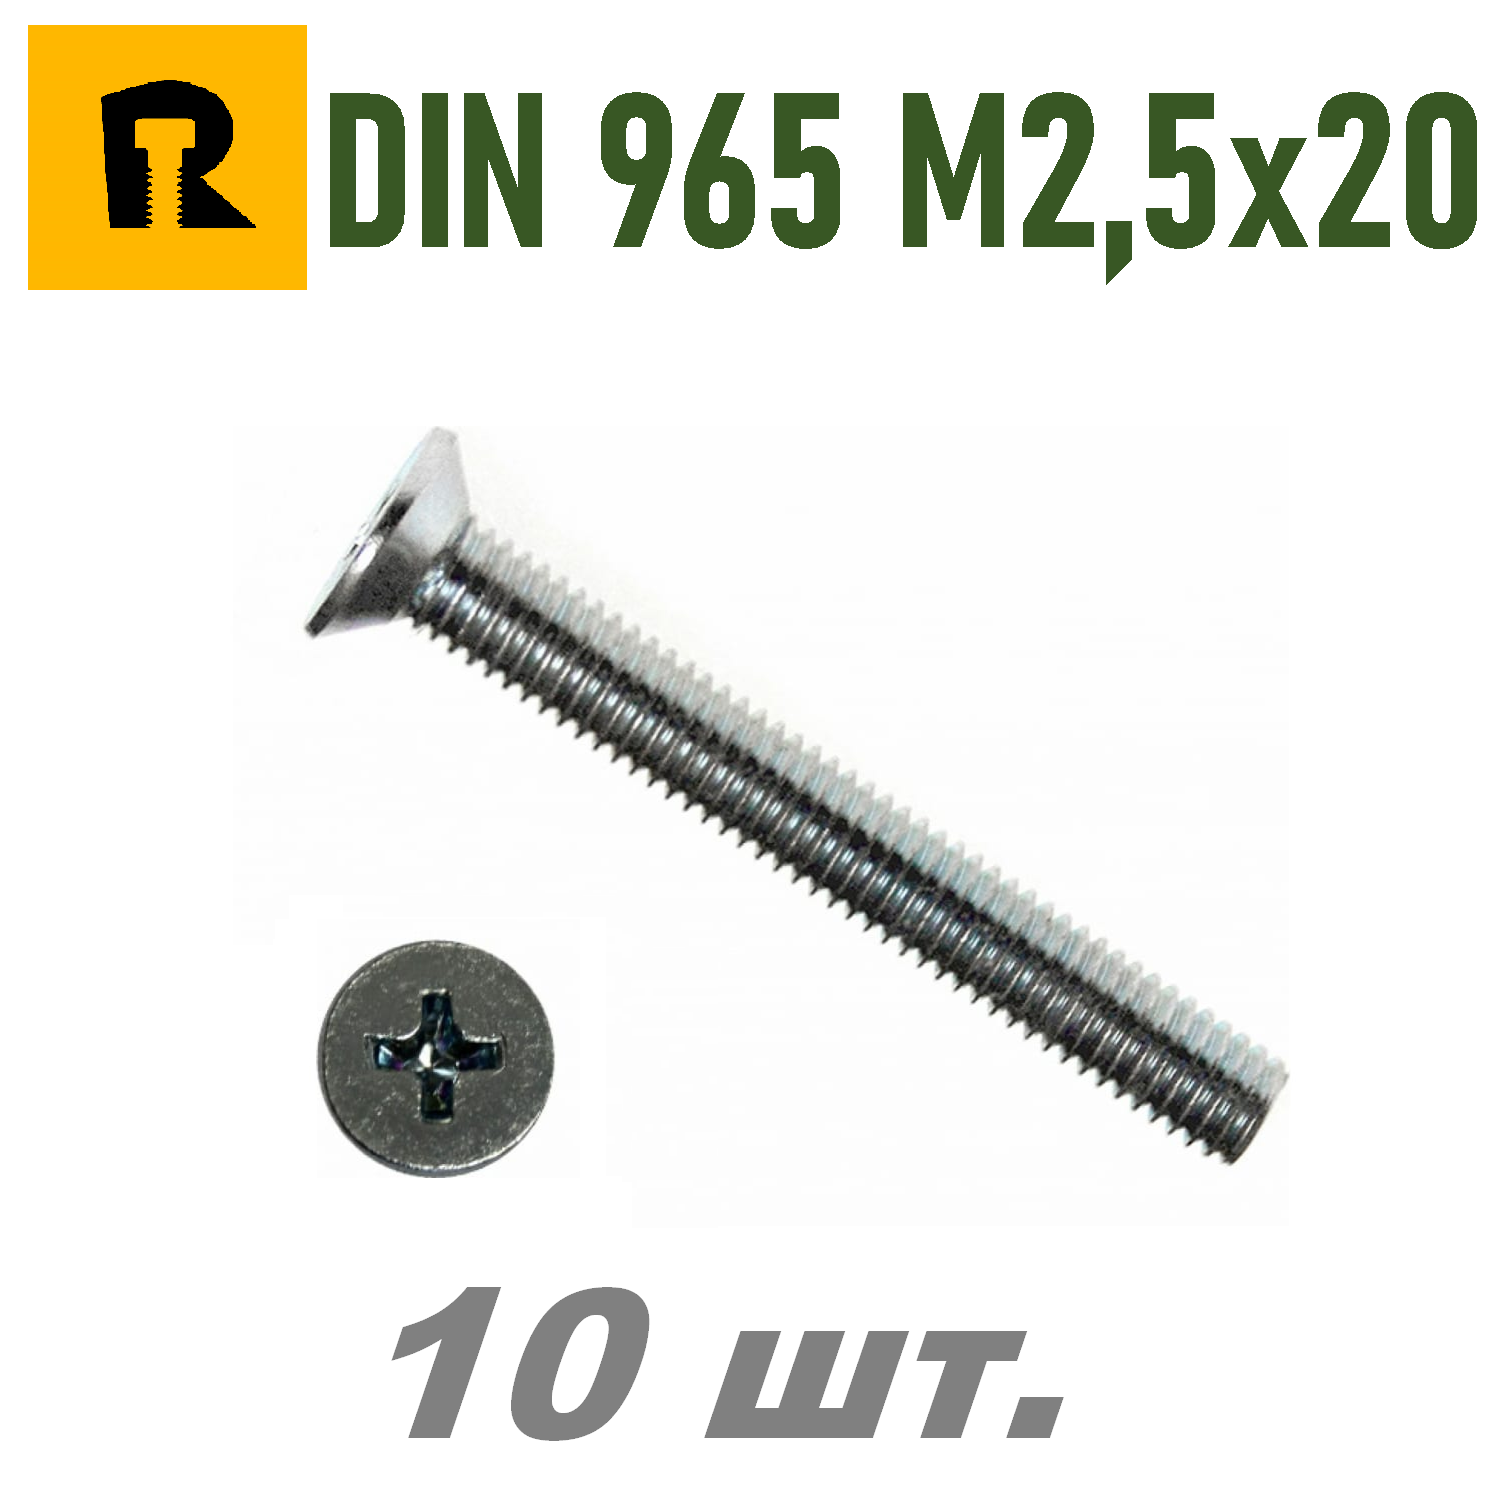 Винт DIN 965 M2,5x20 кп 4.8 ph (гост 17475) - 10 шт.